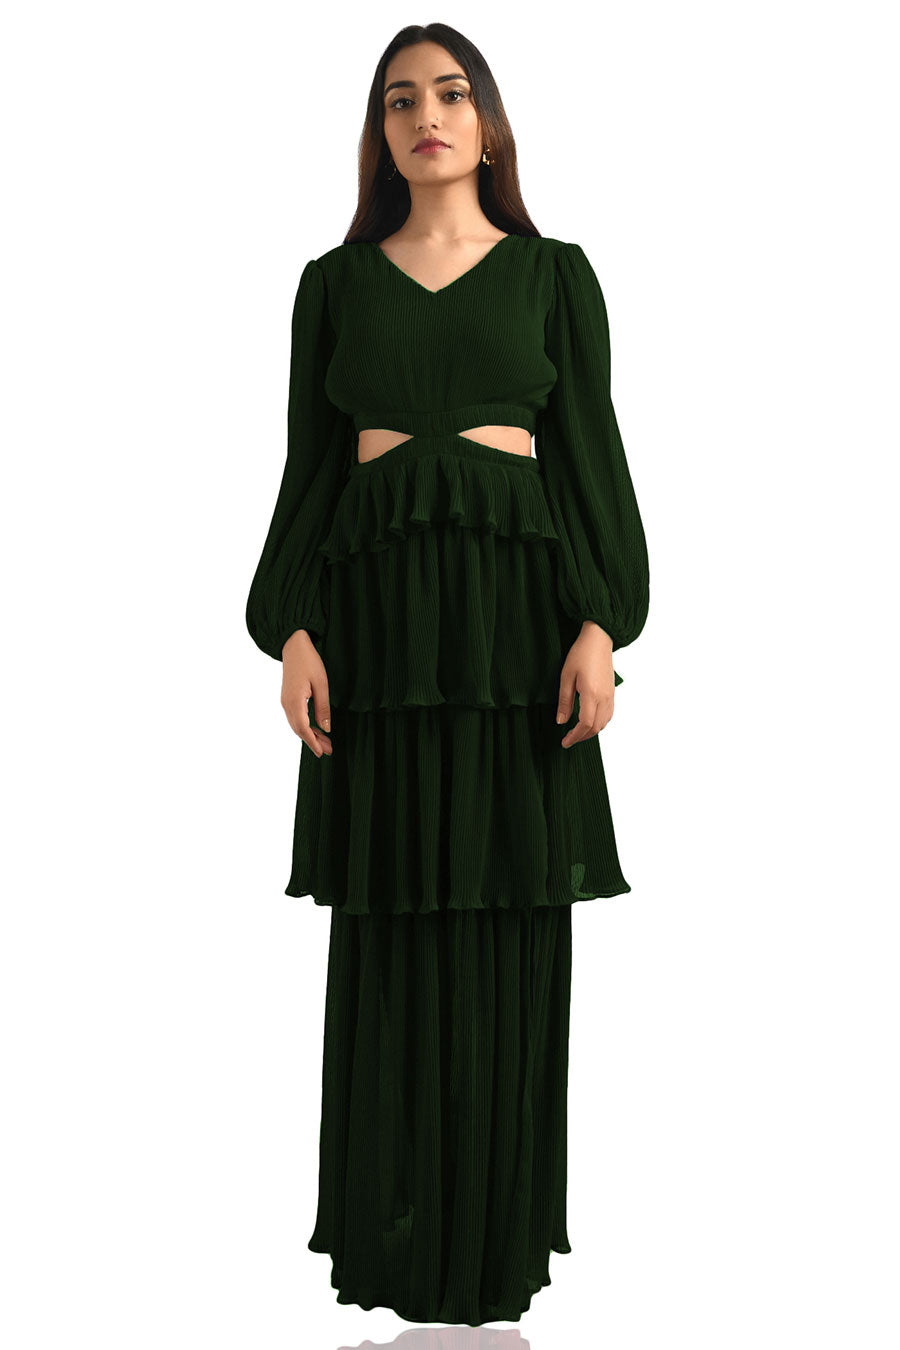 Green Pleated Maxi Dress